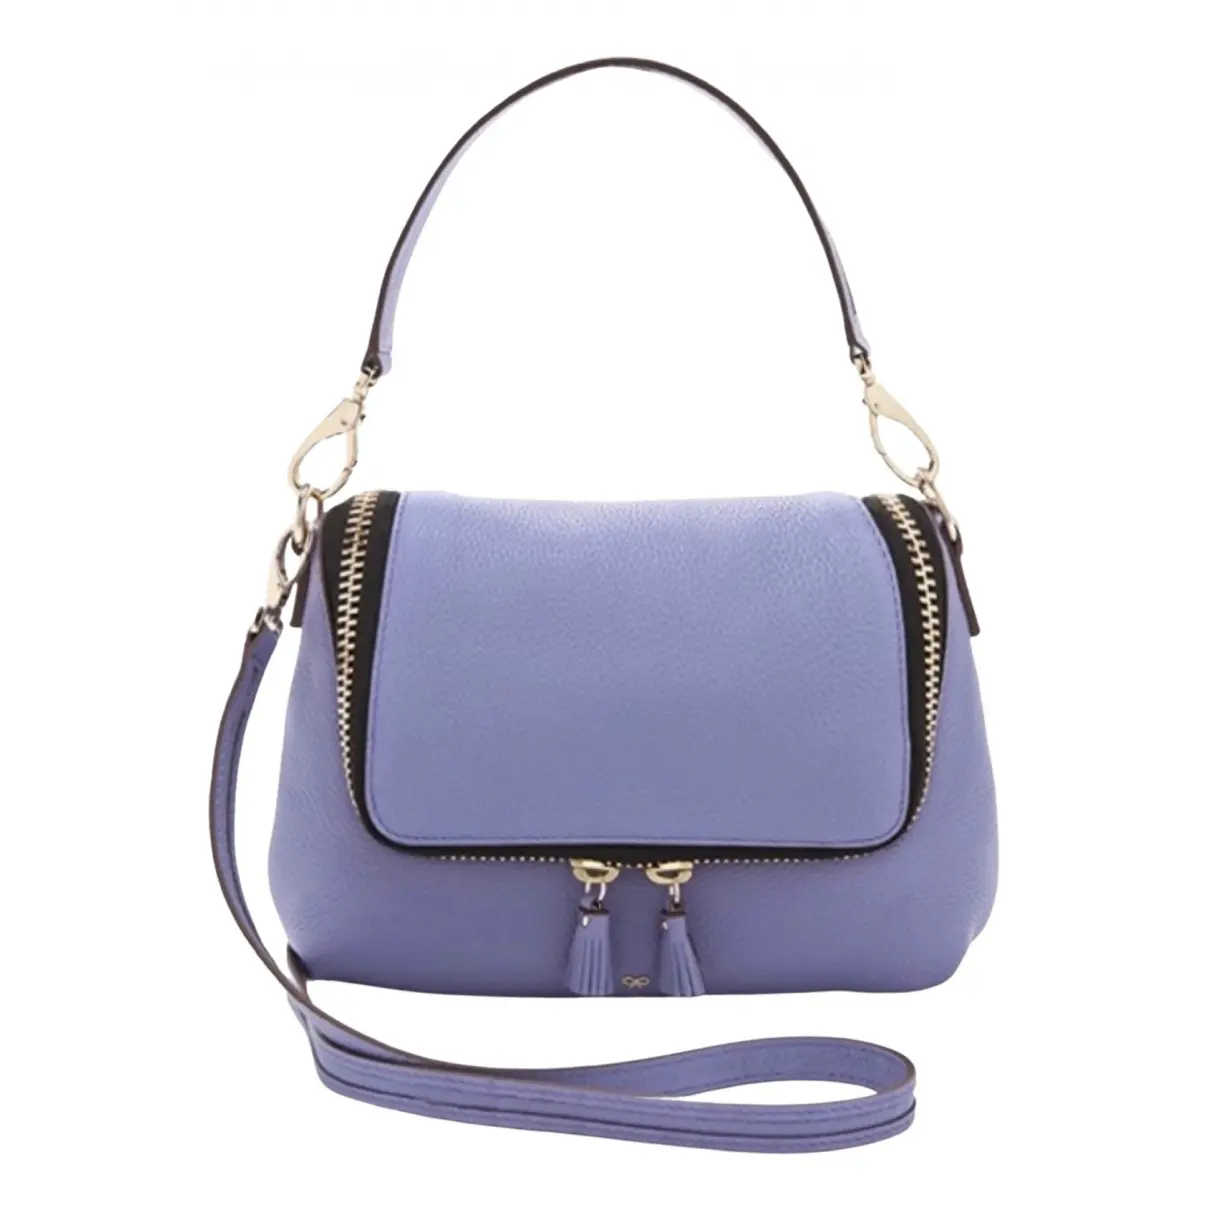 Maxi Zip leather handbag Anya Hindmarch